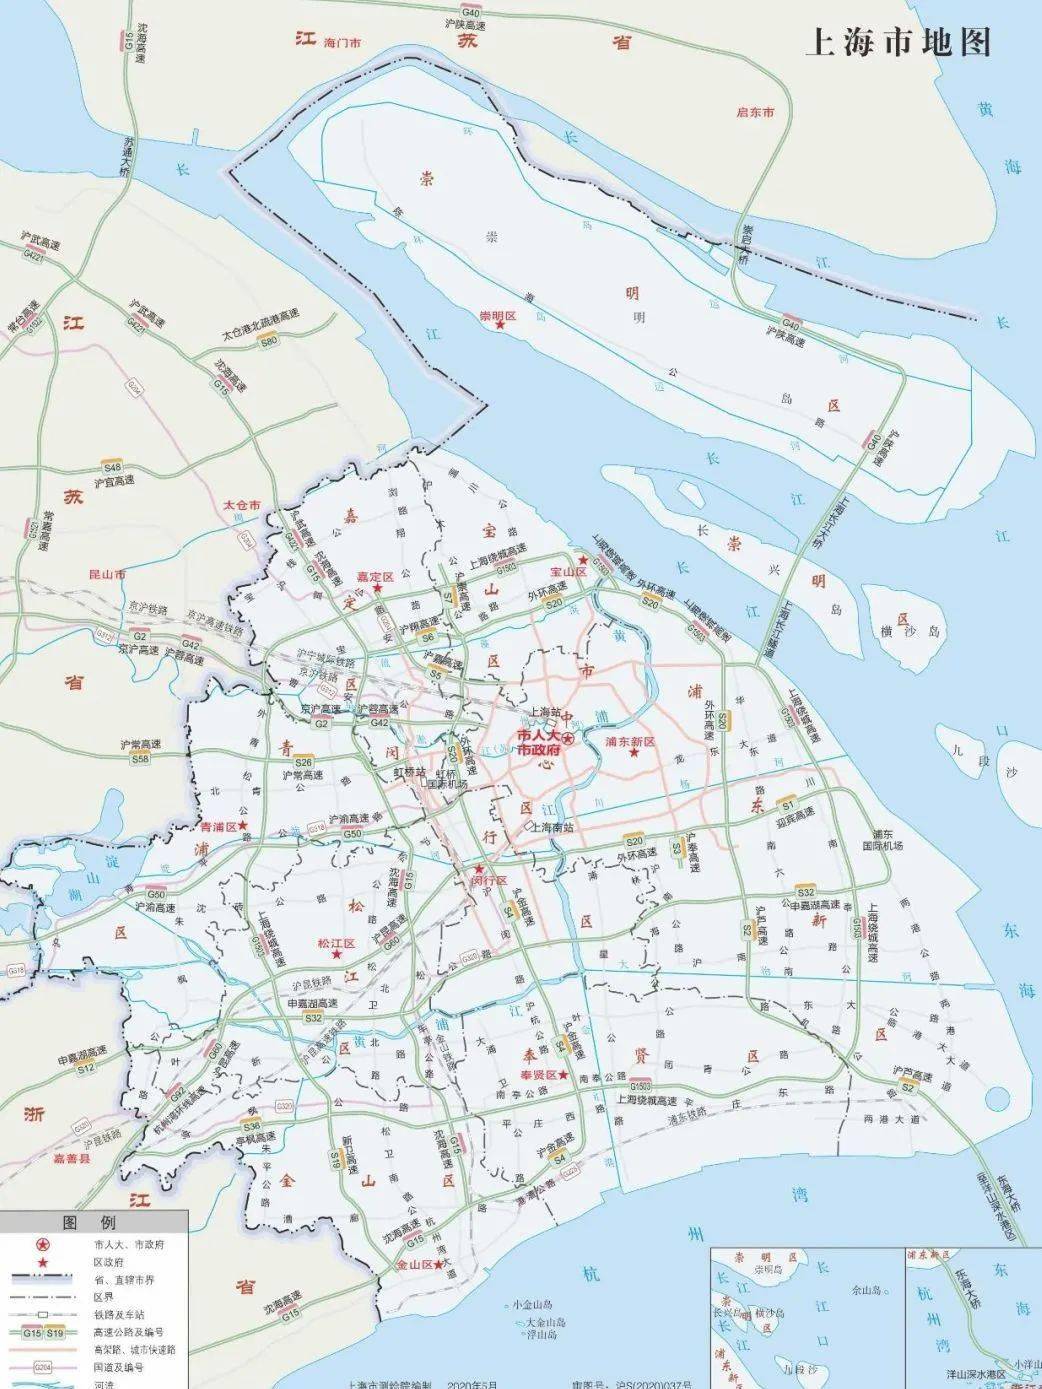 自然资源部最新公布长三角标准地图,上海市和16区的标准地图也陆续